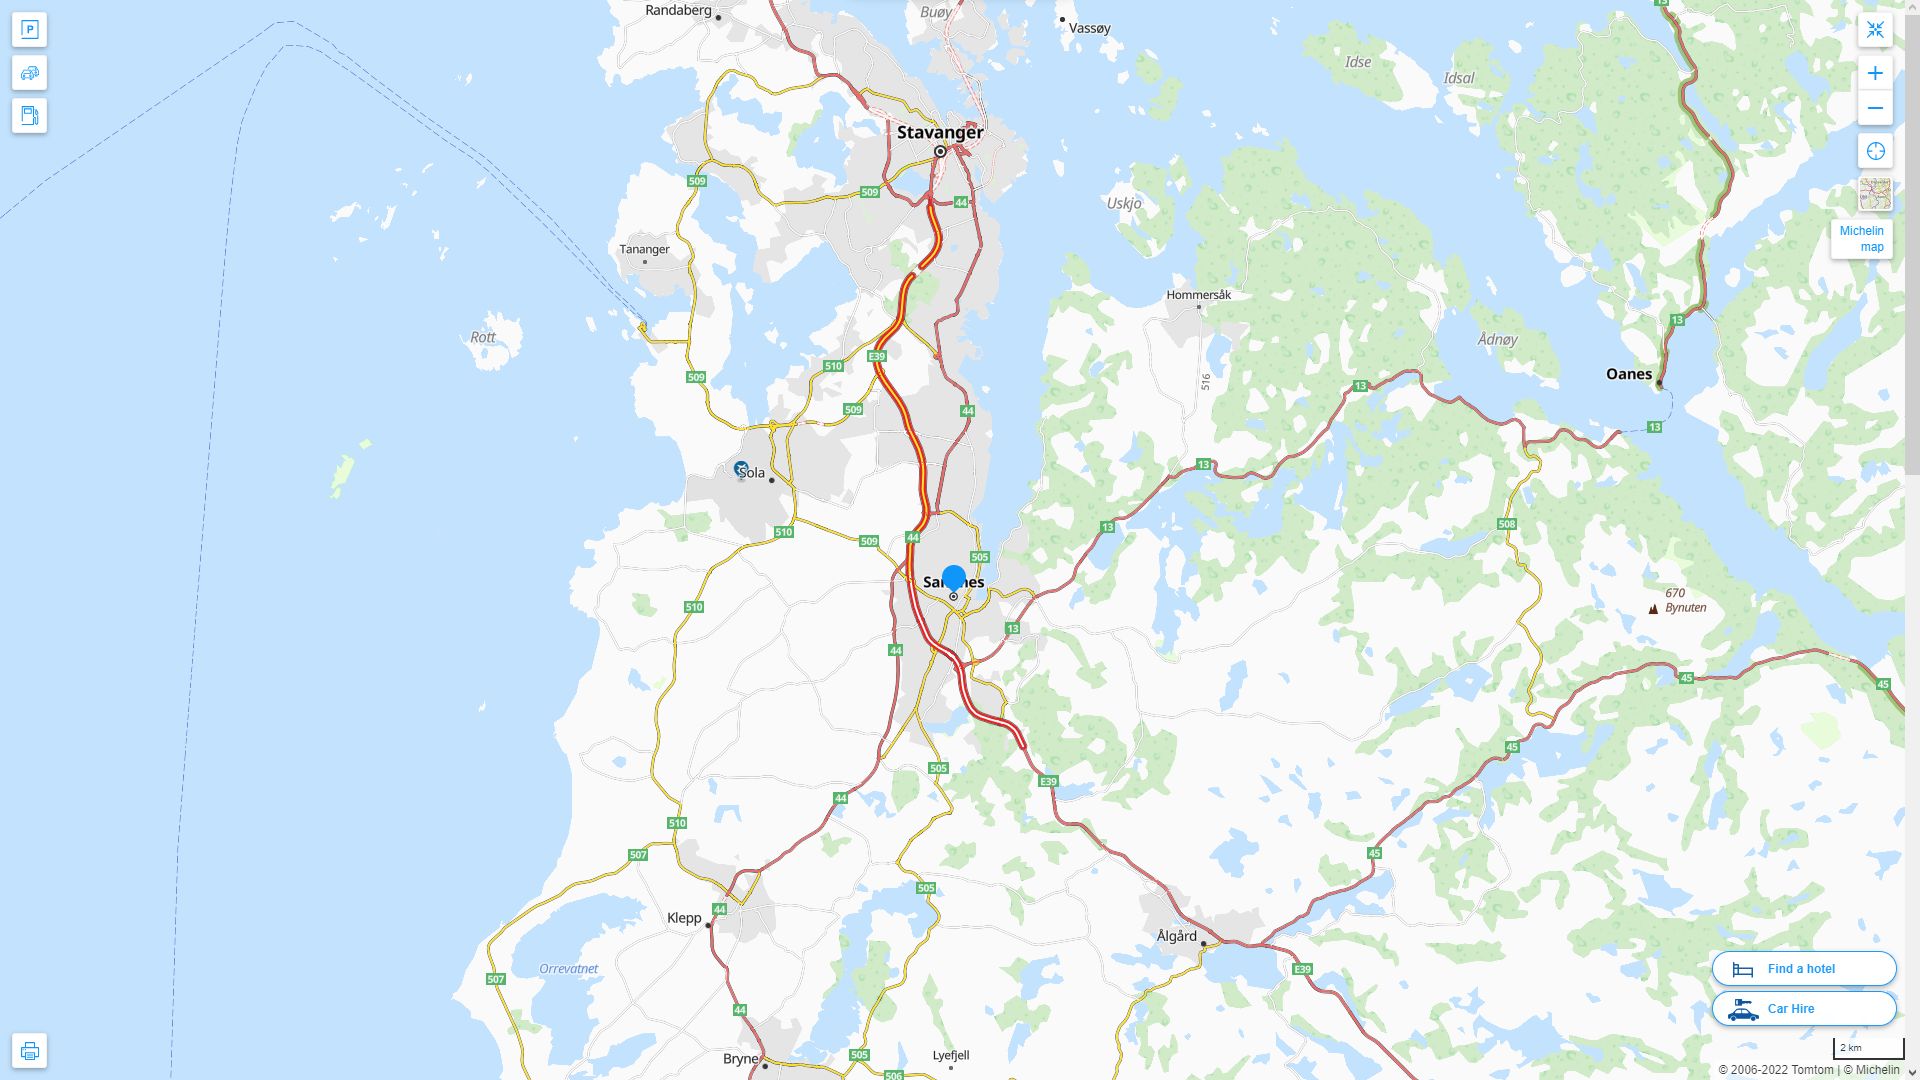 Sandnes Norvege Autoroute et carte routiere